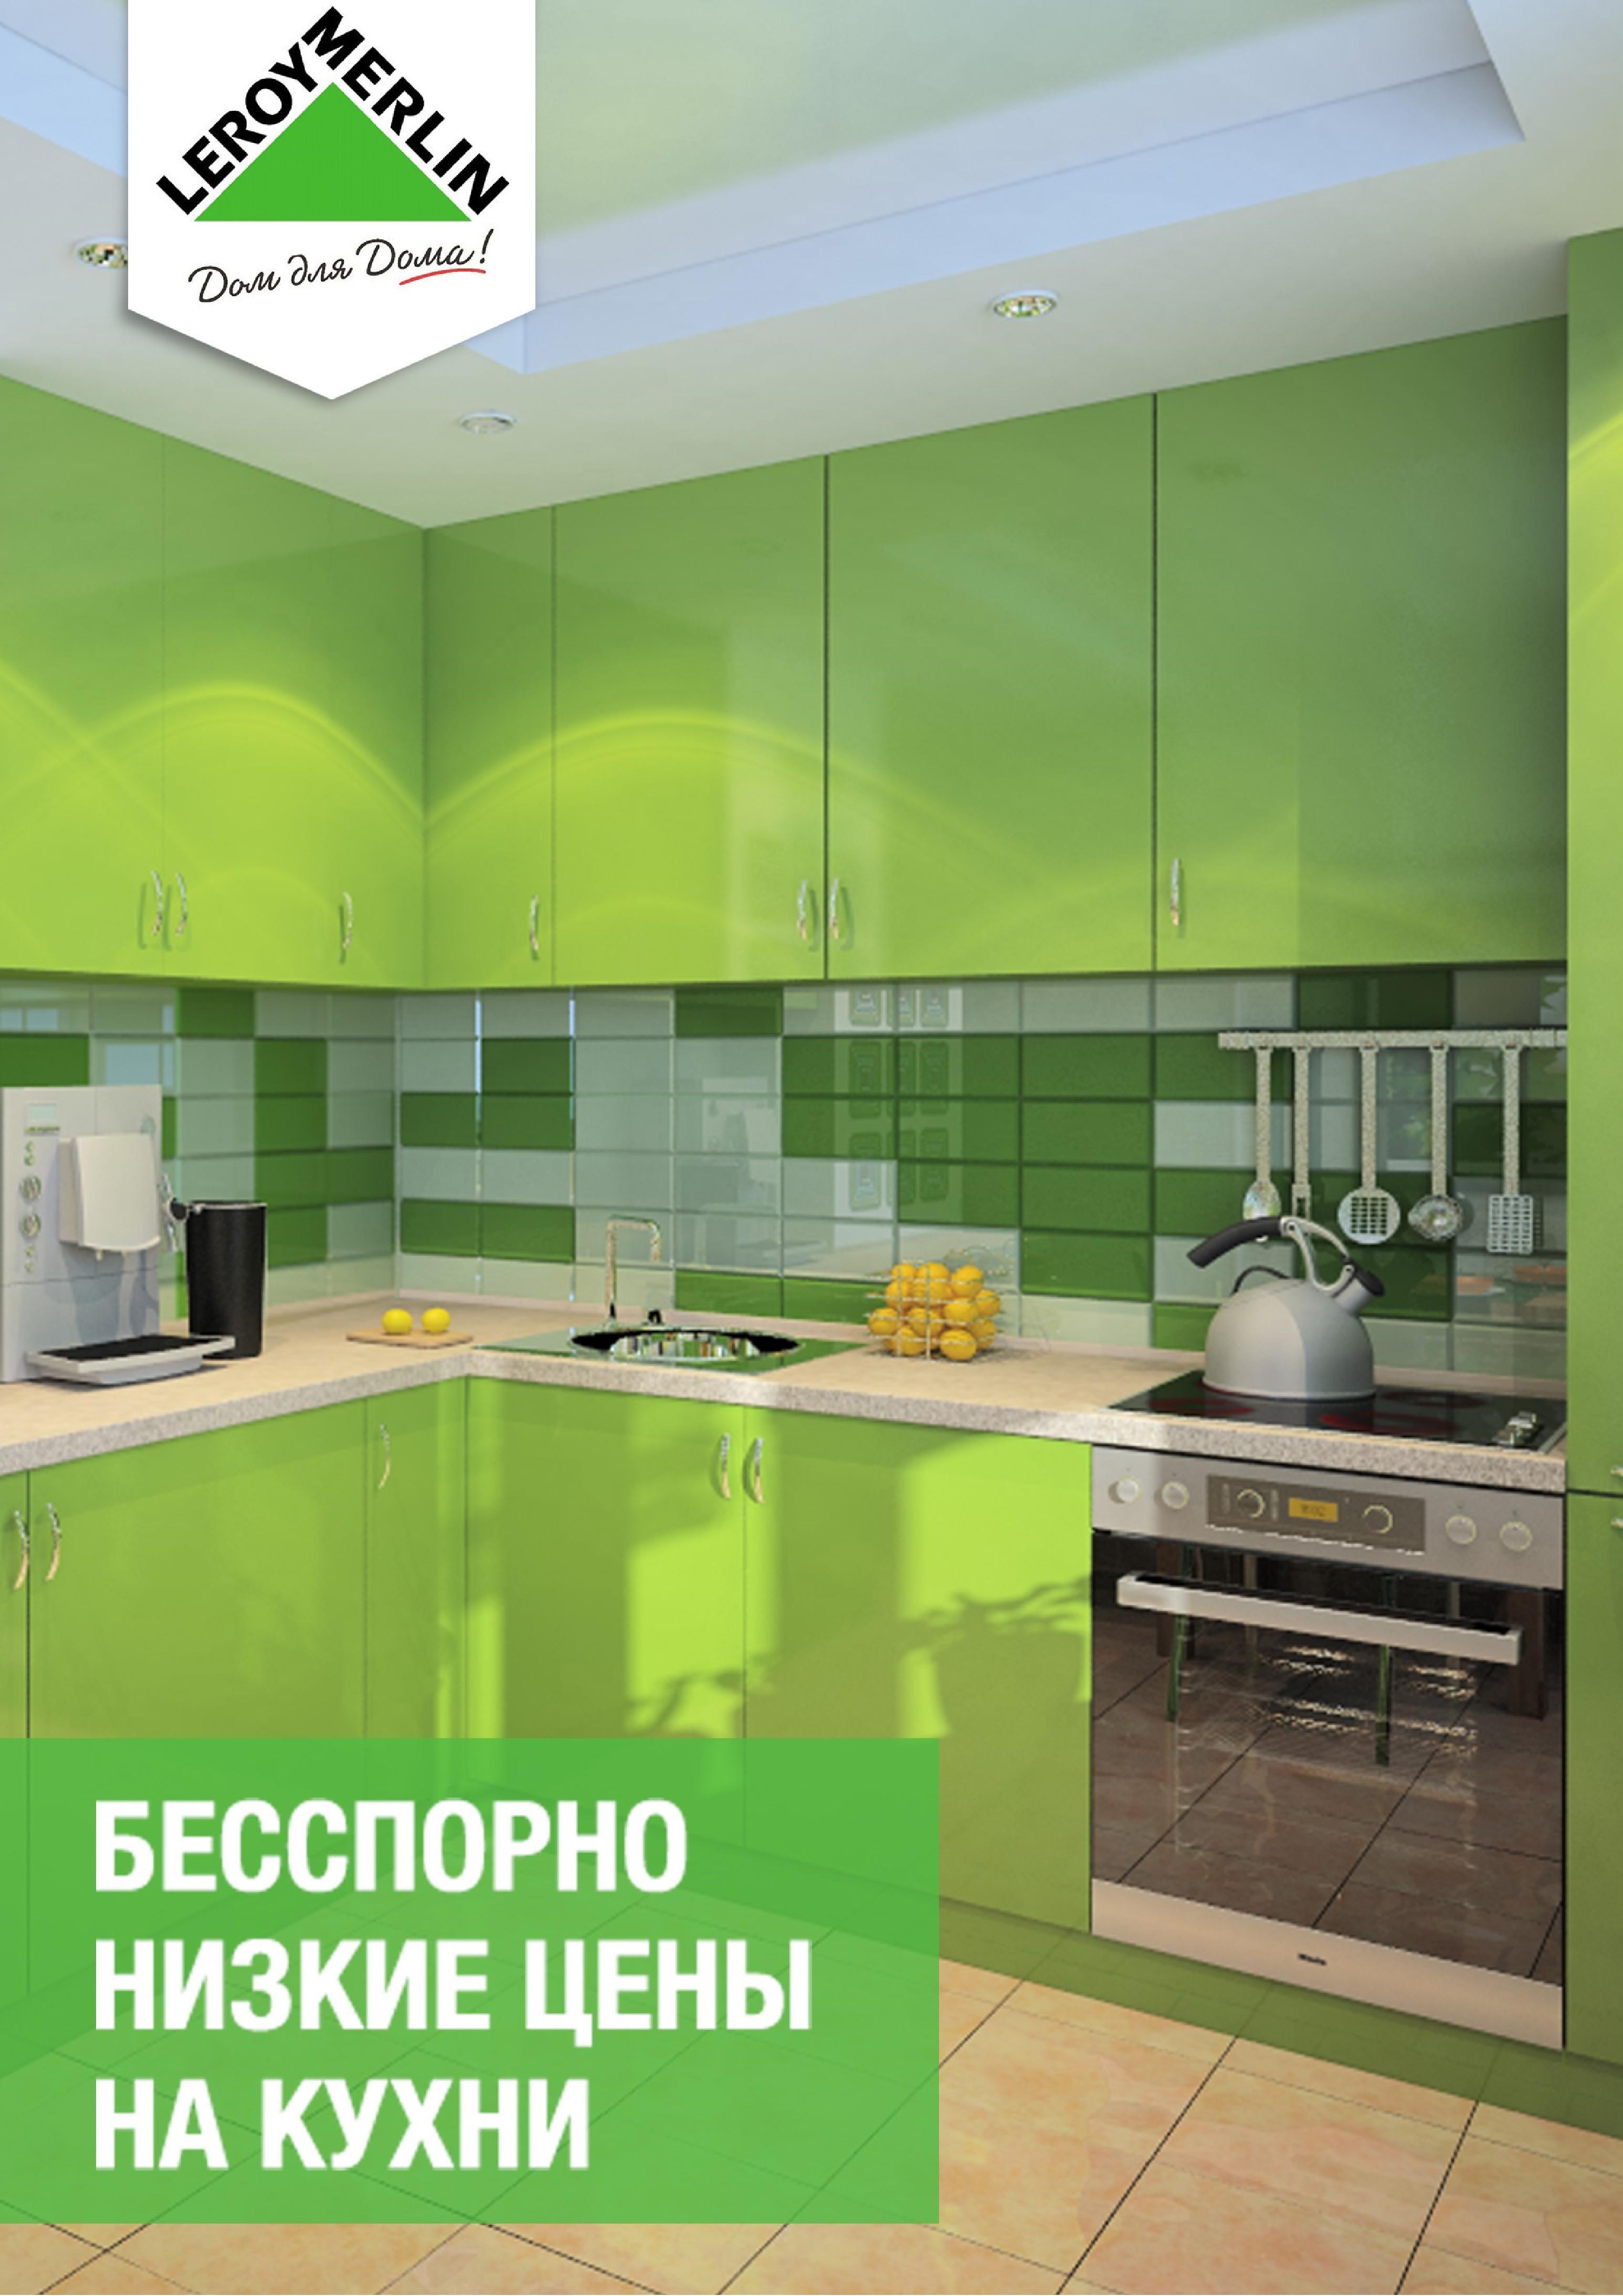 Отзыв о кухне "Леруа Мерлен" в Екатеринбурге (3 фото + цена)